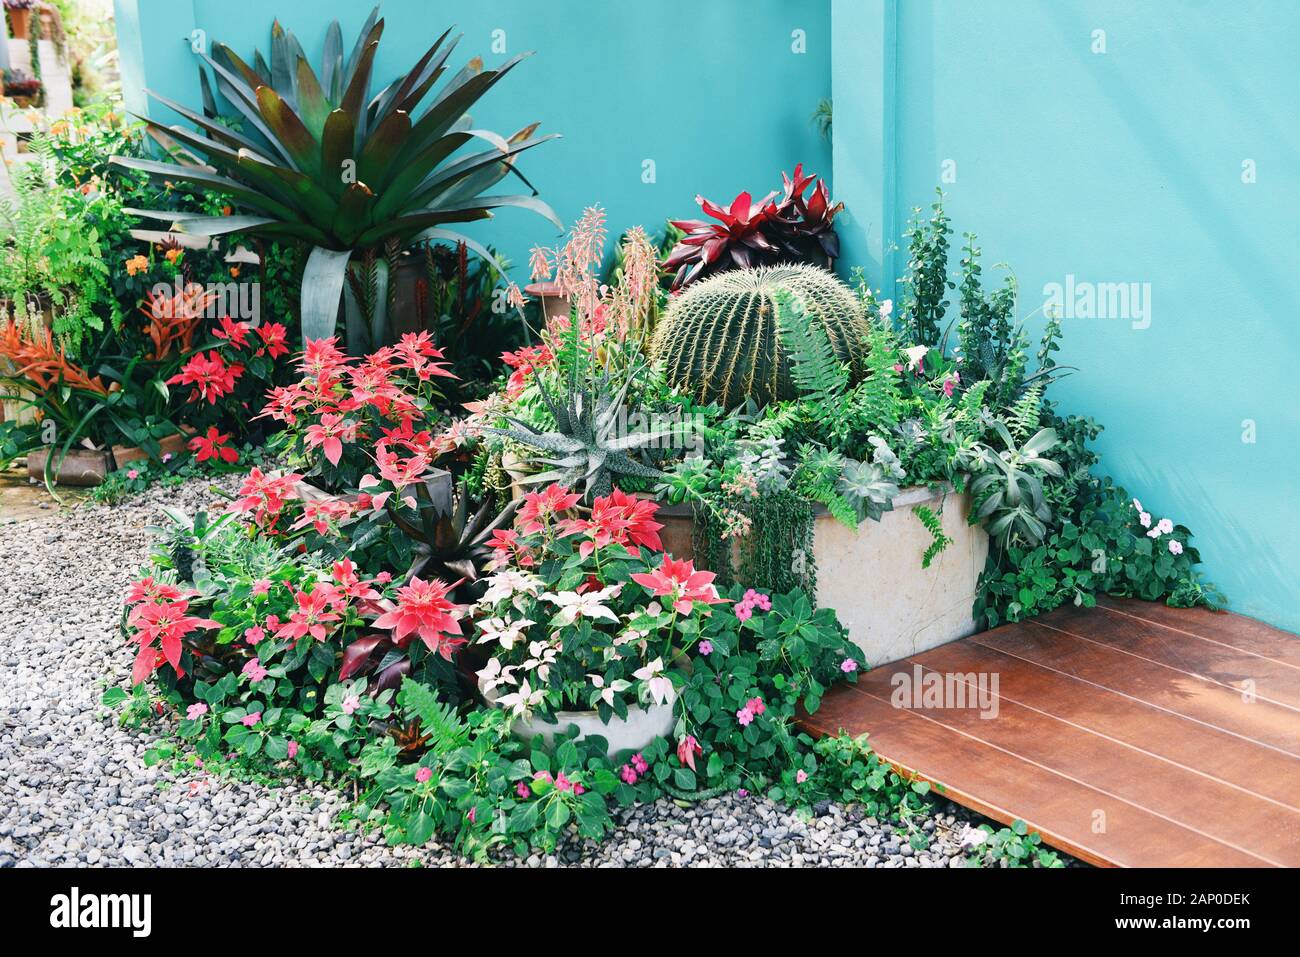 Home Gartenbau und dekorieren Indoor microgreen Gewächshaus Umgebungen geheime Gärten und moderne Gartenarbeit Setups/Blumen und Zierpflanzen gar Stockfoto